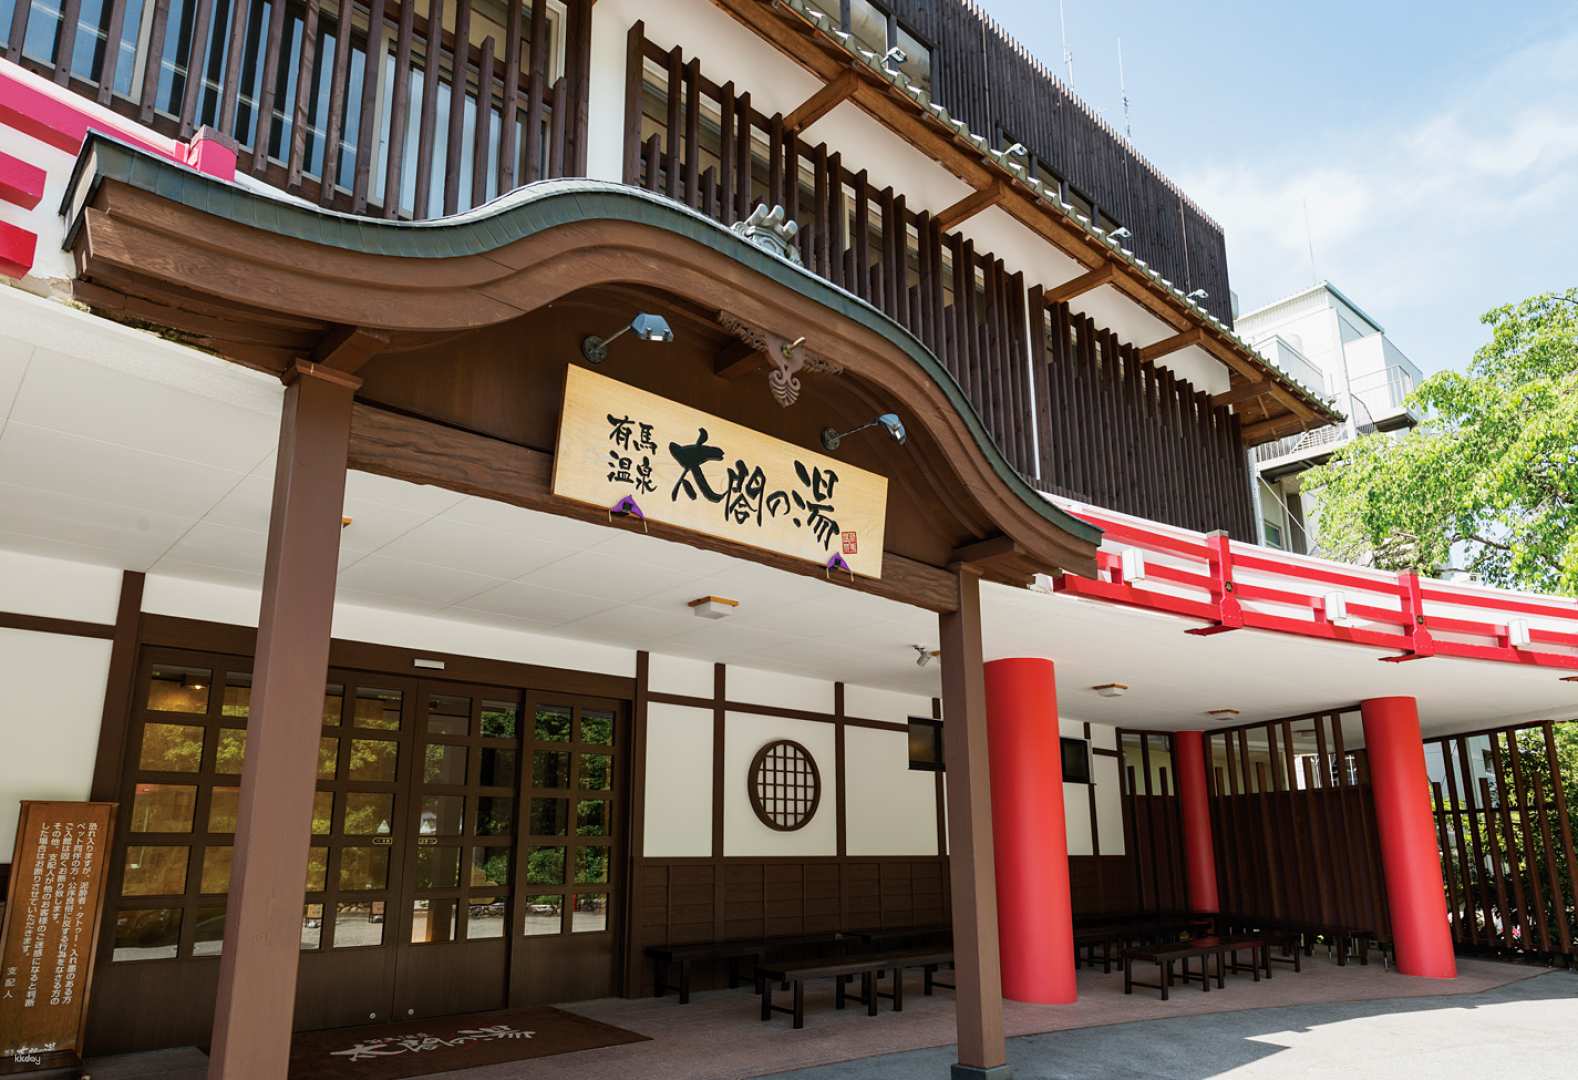 日本-神戶有馬溫泉太閣之湯溫泉主題樂園套票